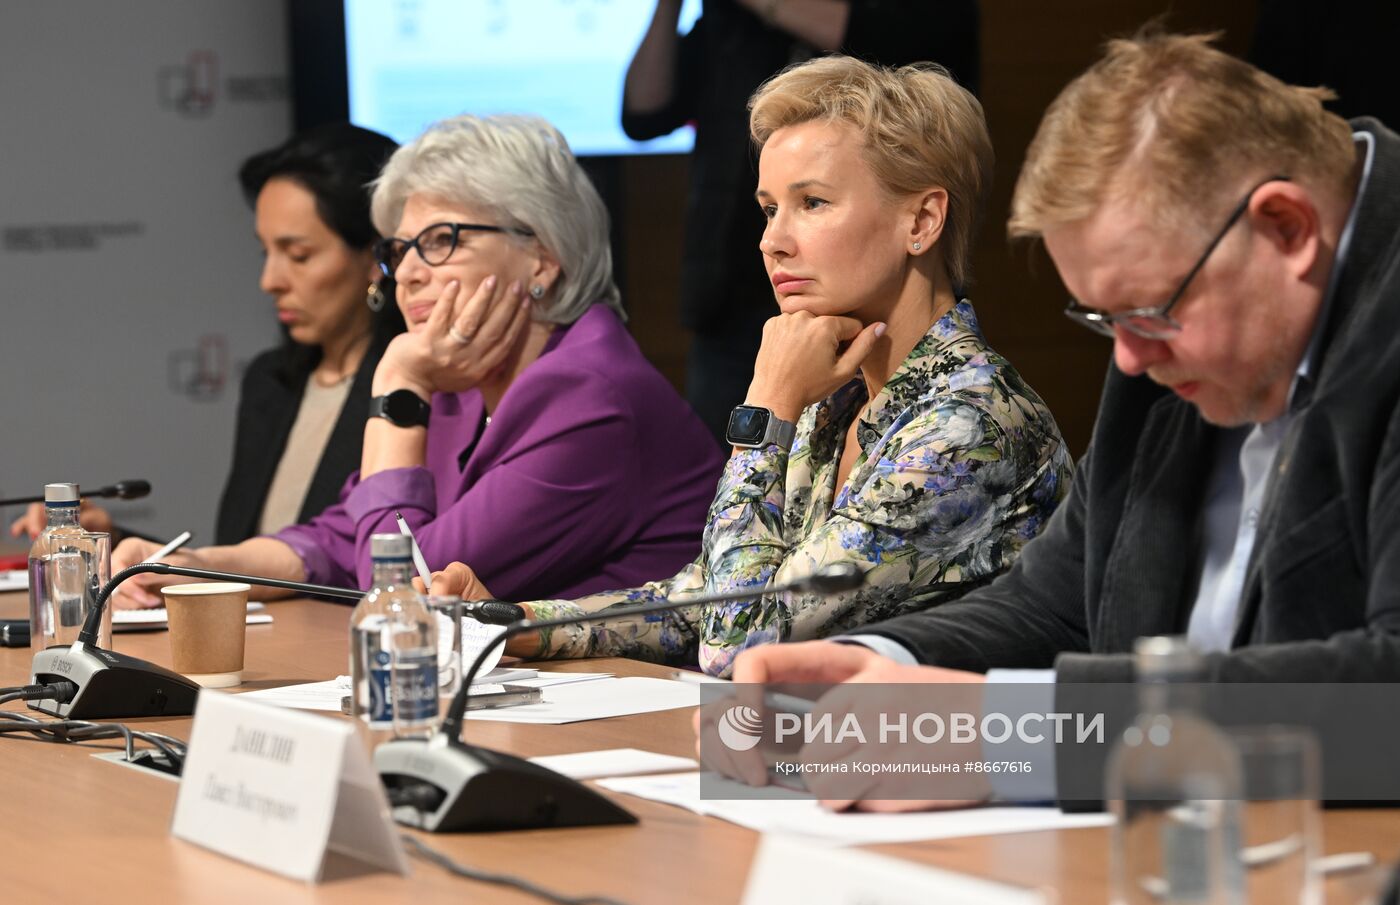 Расширенное заседание Комиссии по культуре и культурно-историческому наследию Общественной палаты города Москвы 